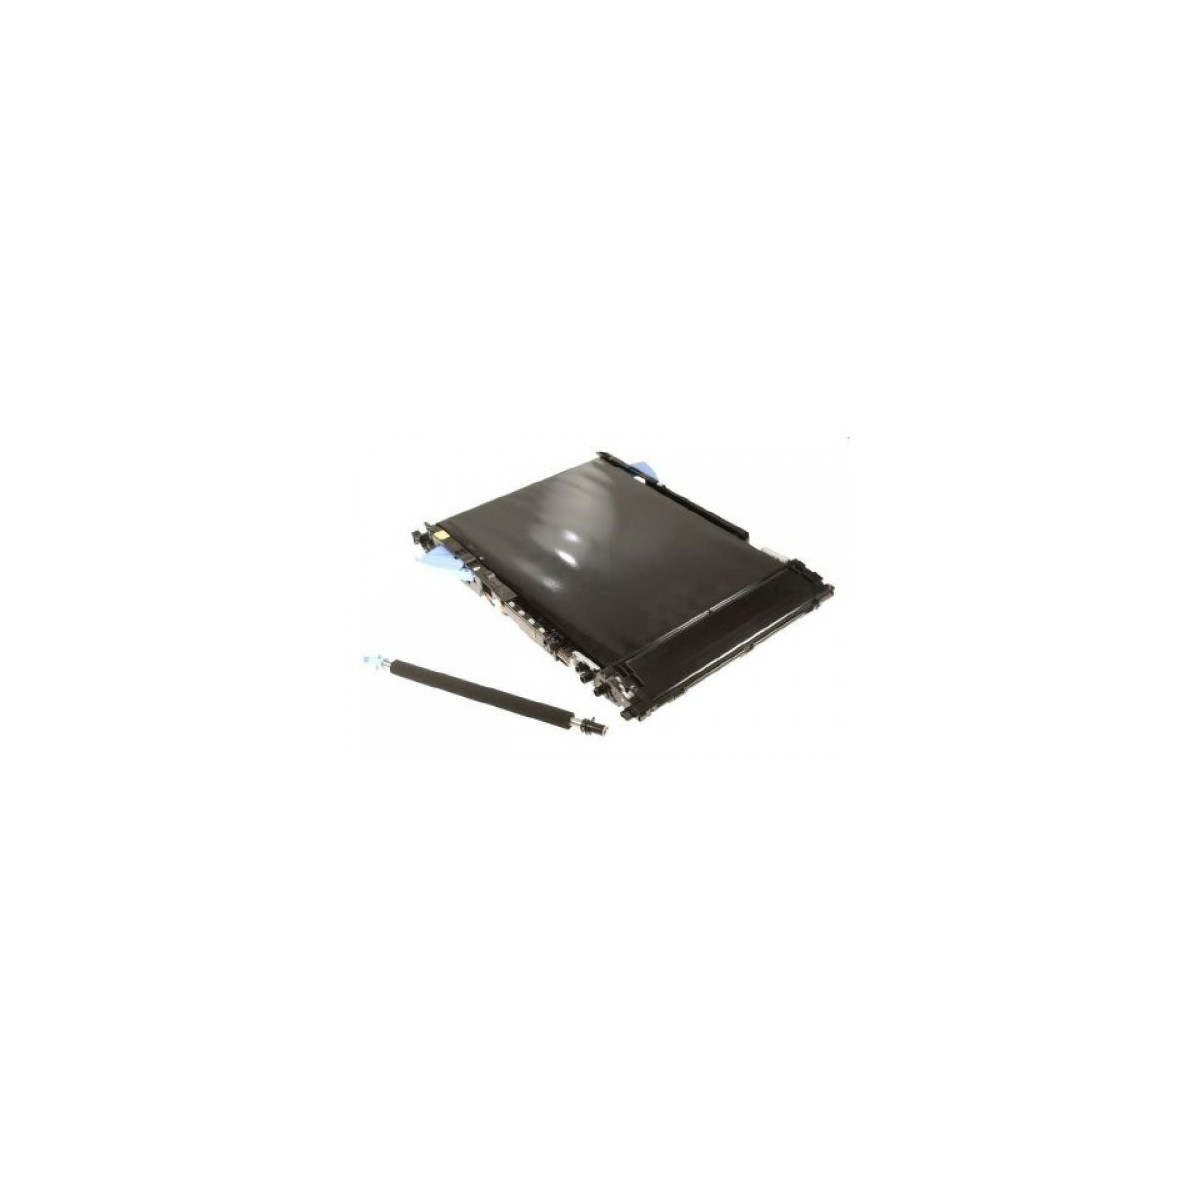 HP CC468-67927 - 150000 pages - Black - HP Color LaserJet CP3525 - Color LaserJet CM3530 MFP - 1 pc(s)